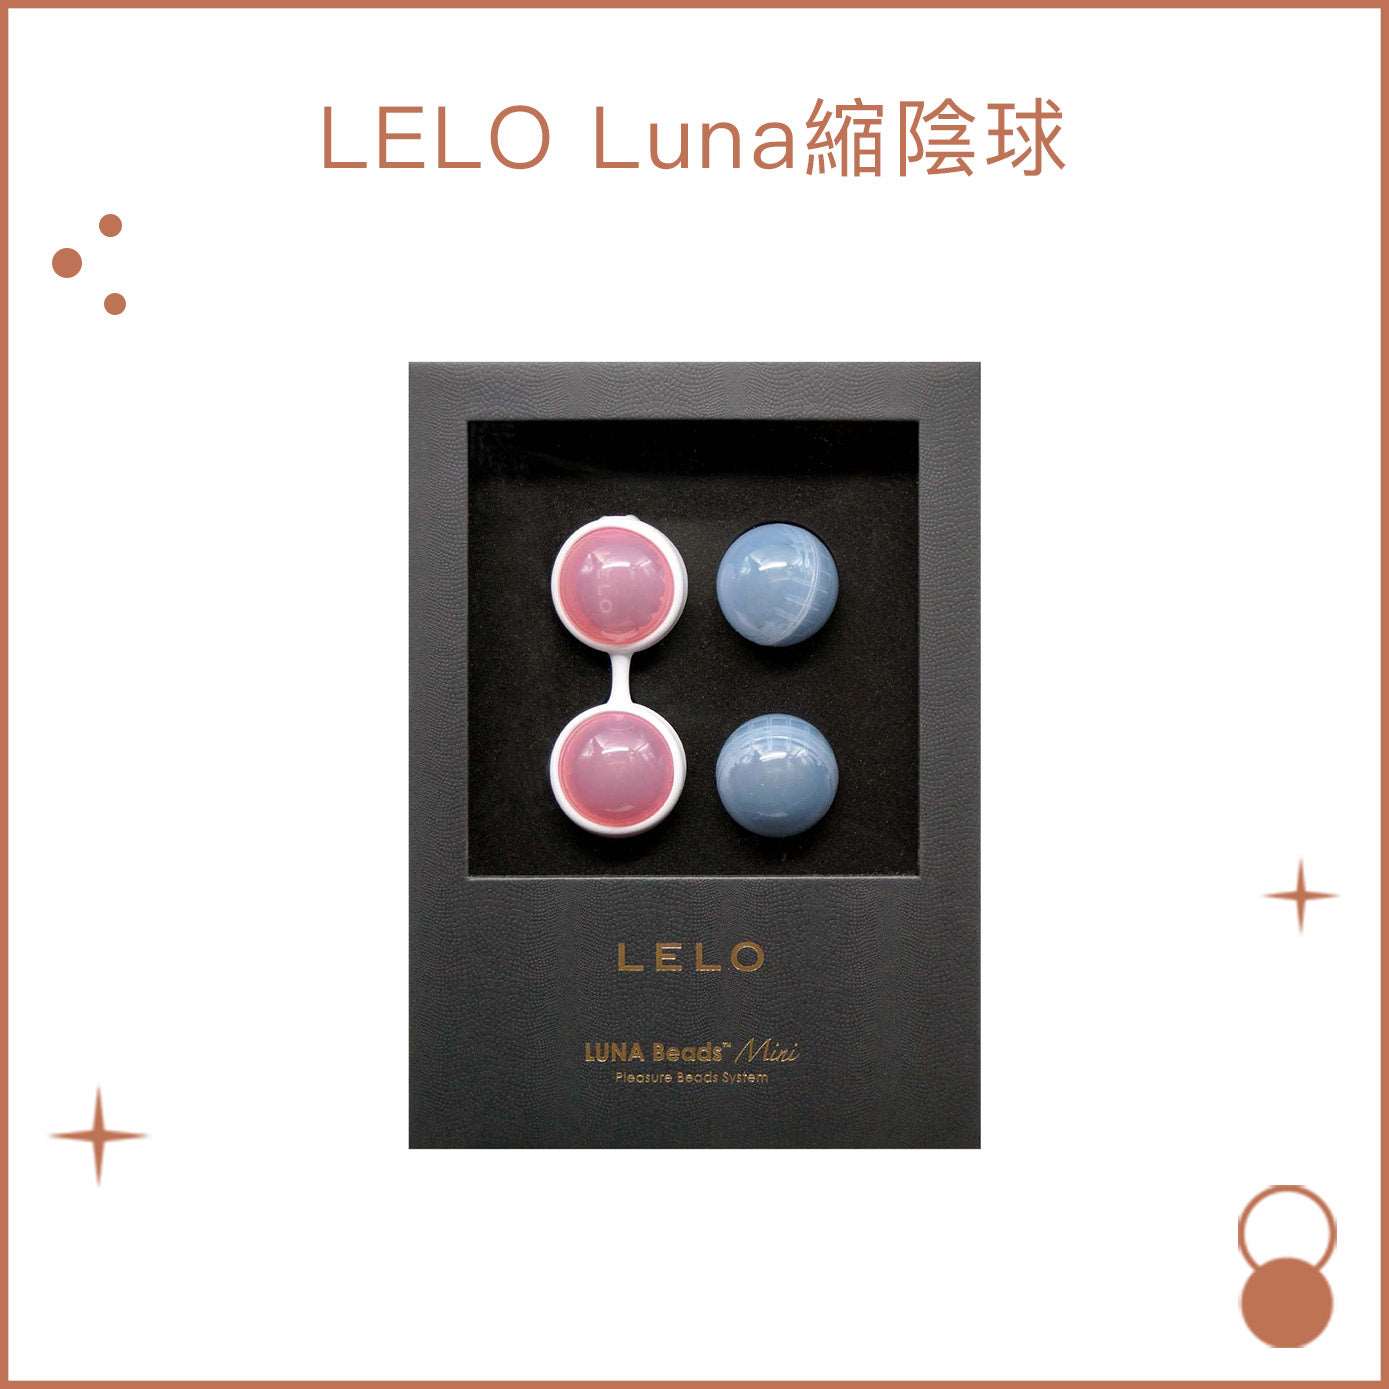 LELO Luna迷你版縮陰球